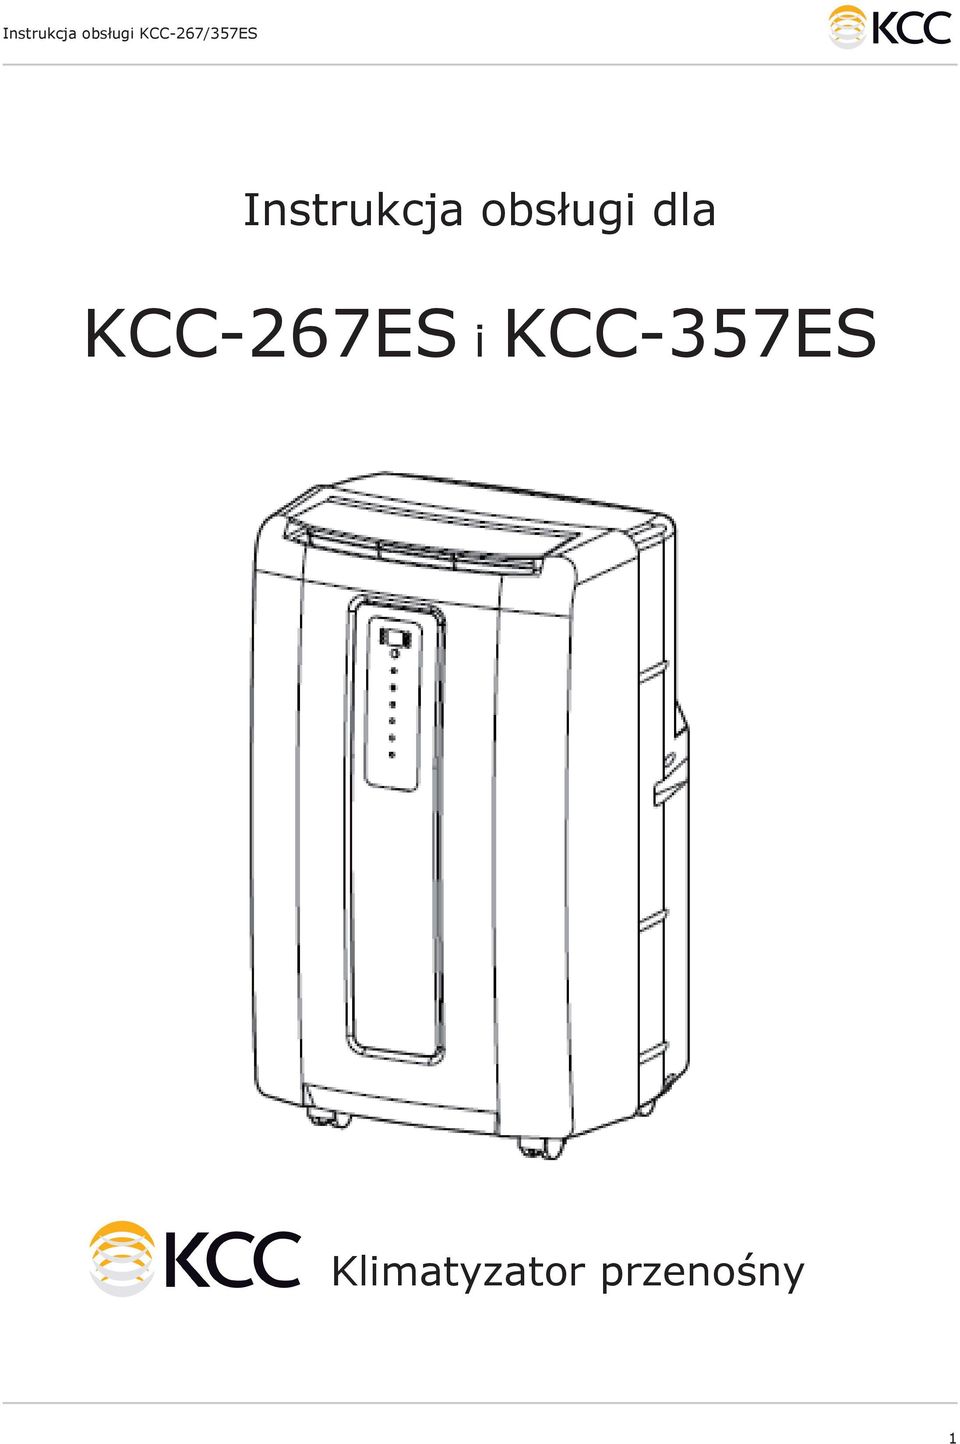 KCC-267ES i